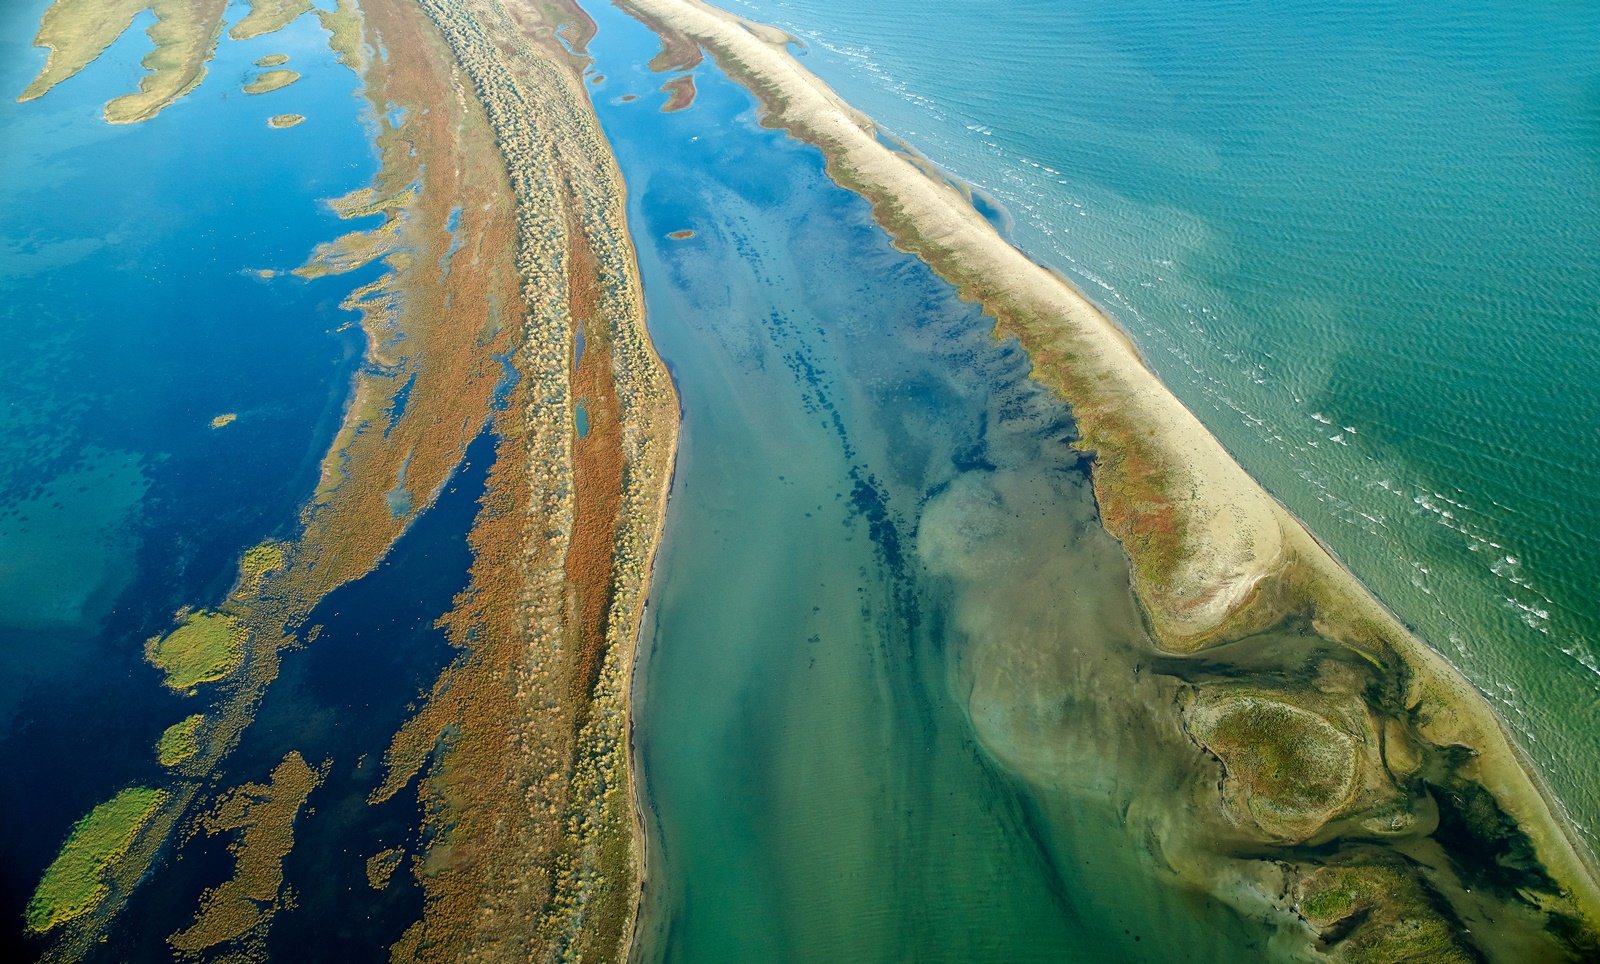 lucruri interesante despre delta dunarii